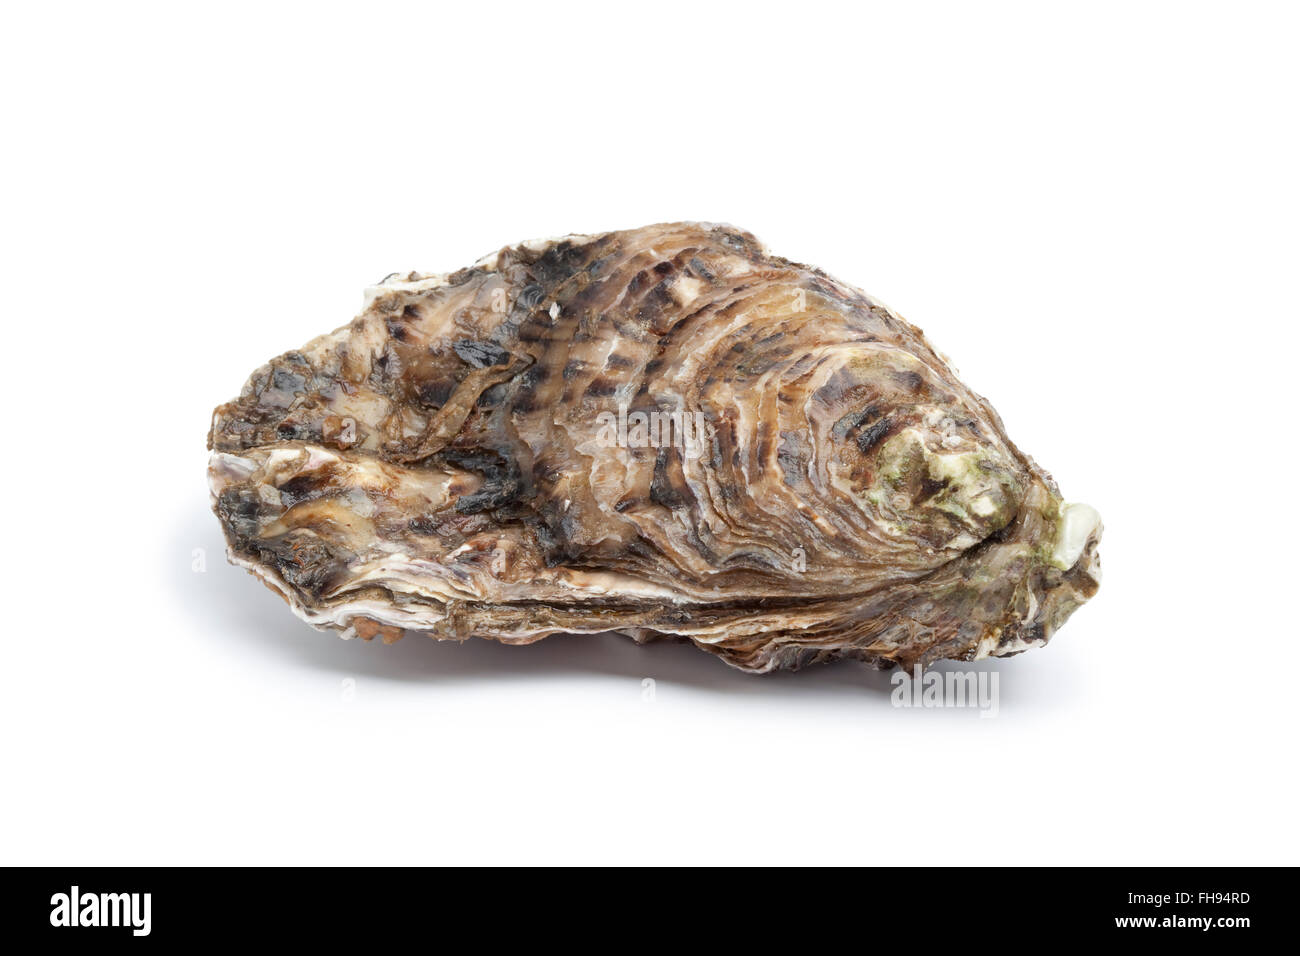 Whole single fresh raw oyster on white background Stock Photo